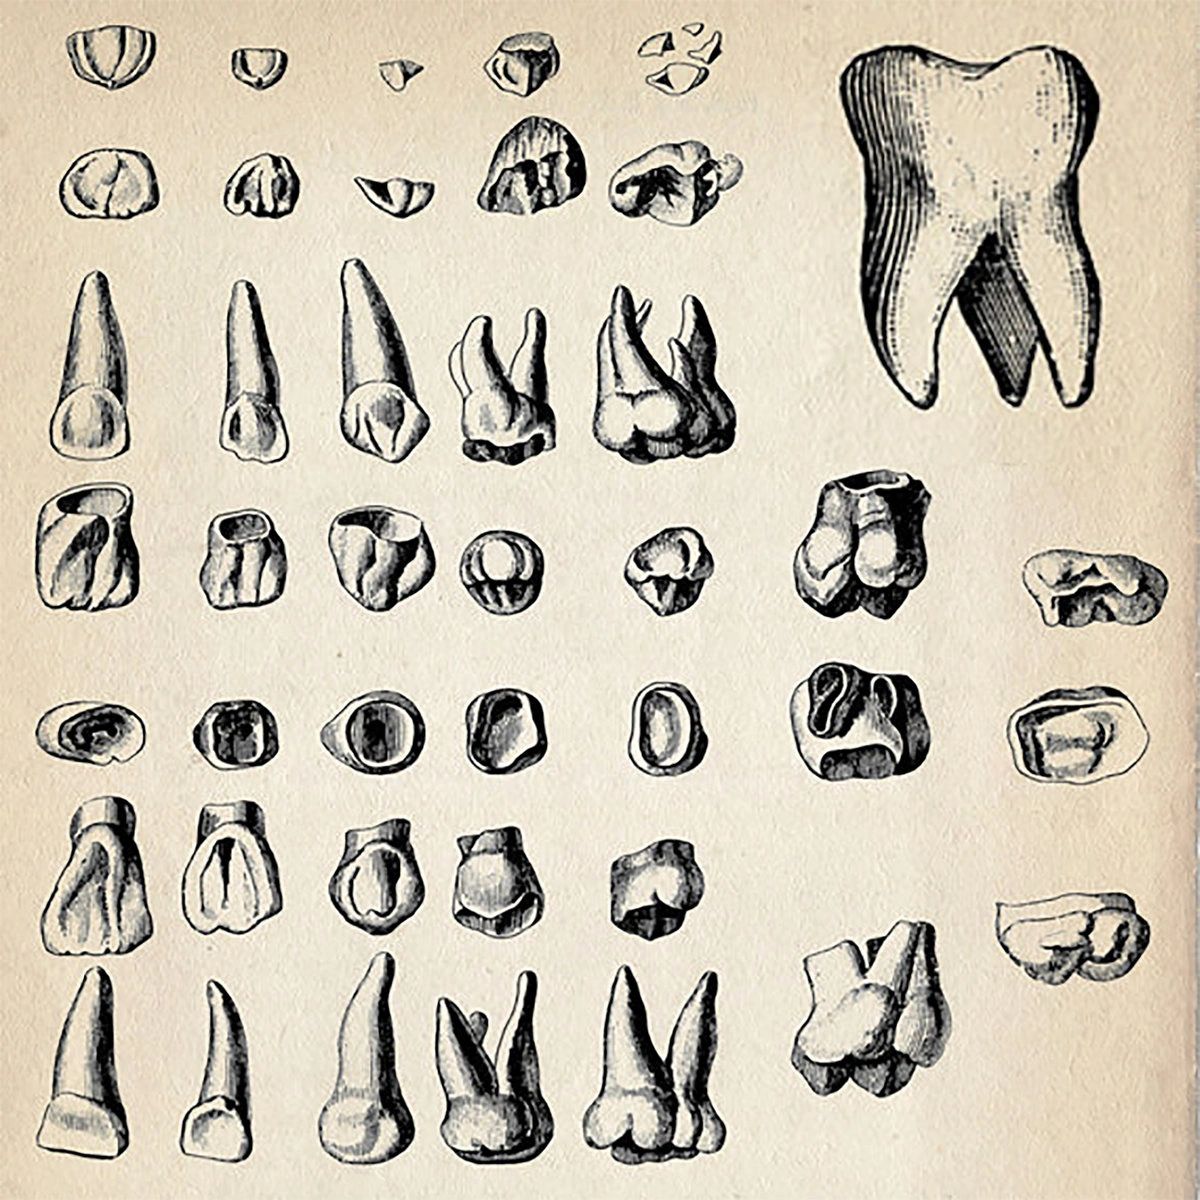 Зубы карандашом анатомия